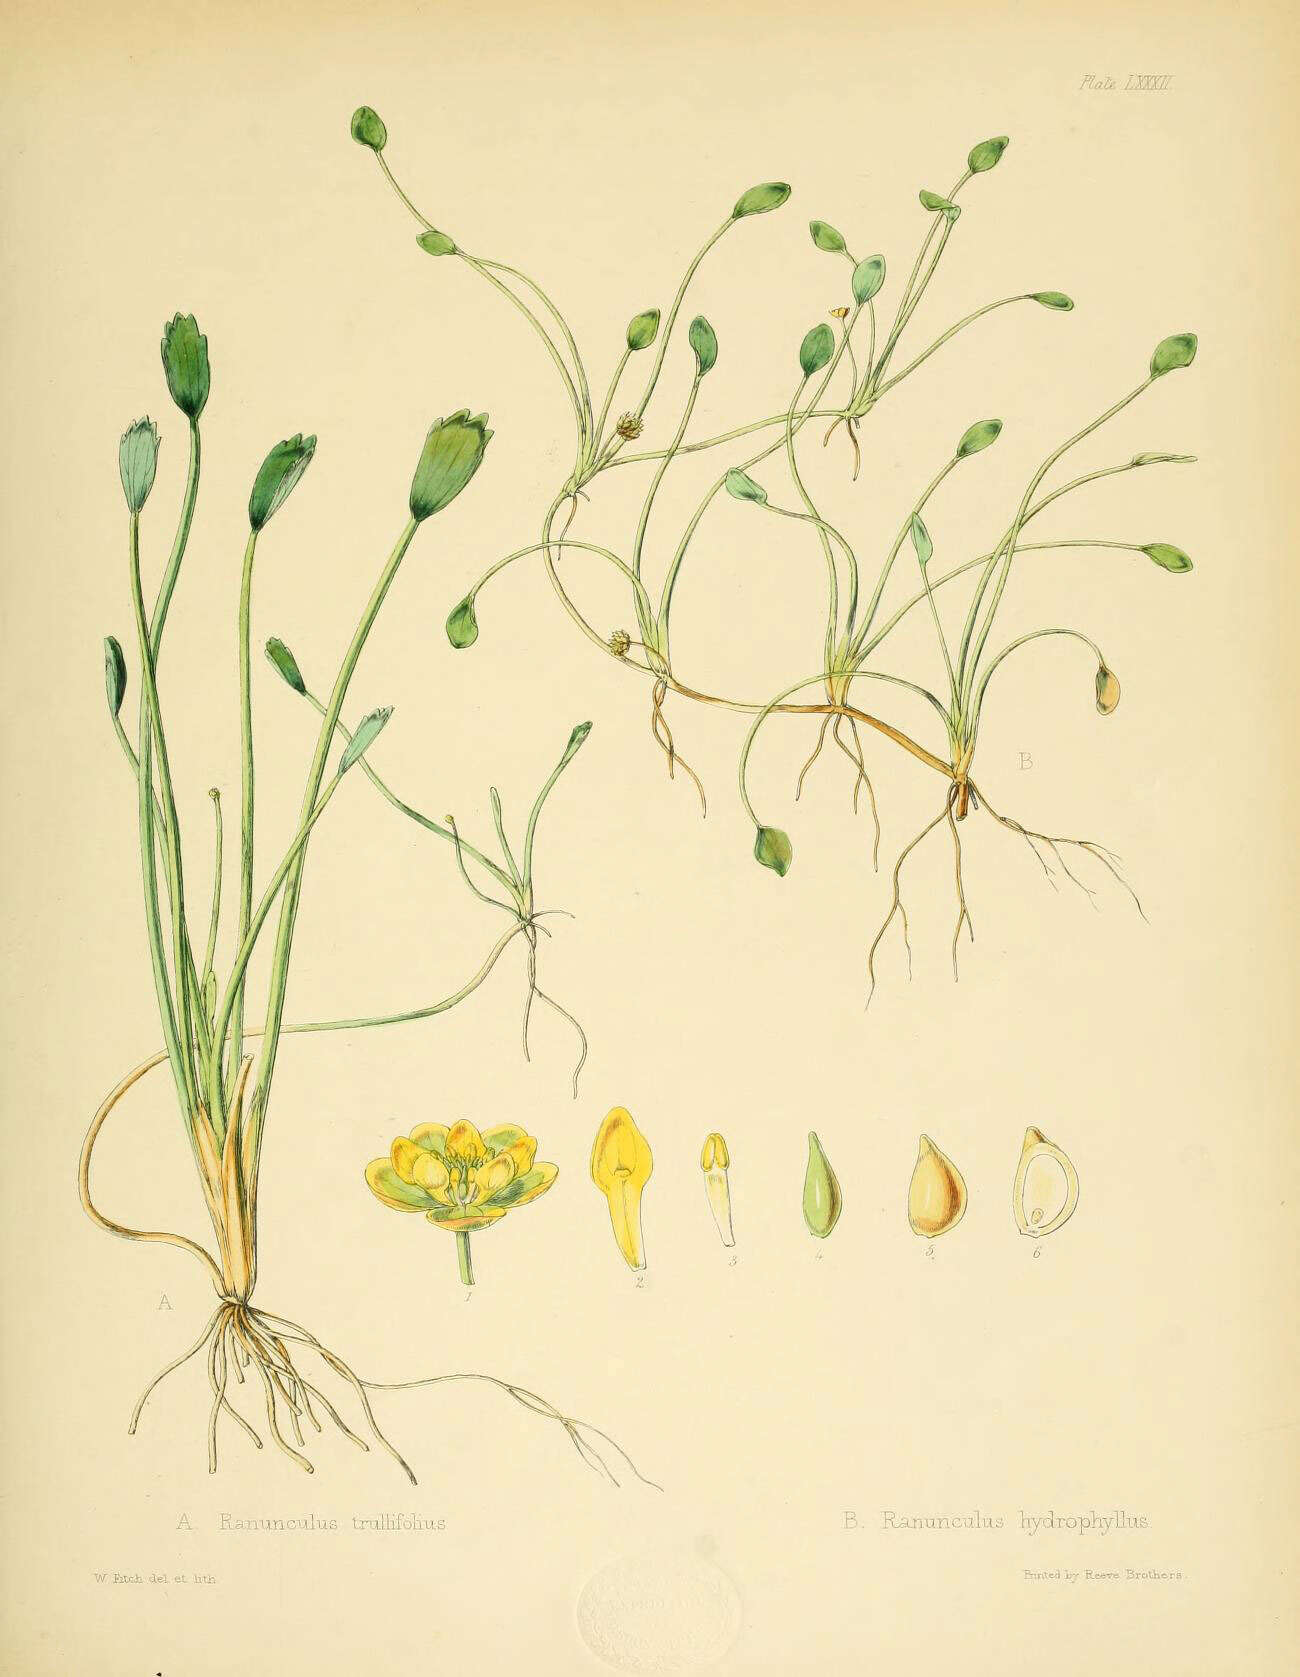 Image of Ranunculus trullifolius Hook. fil.